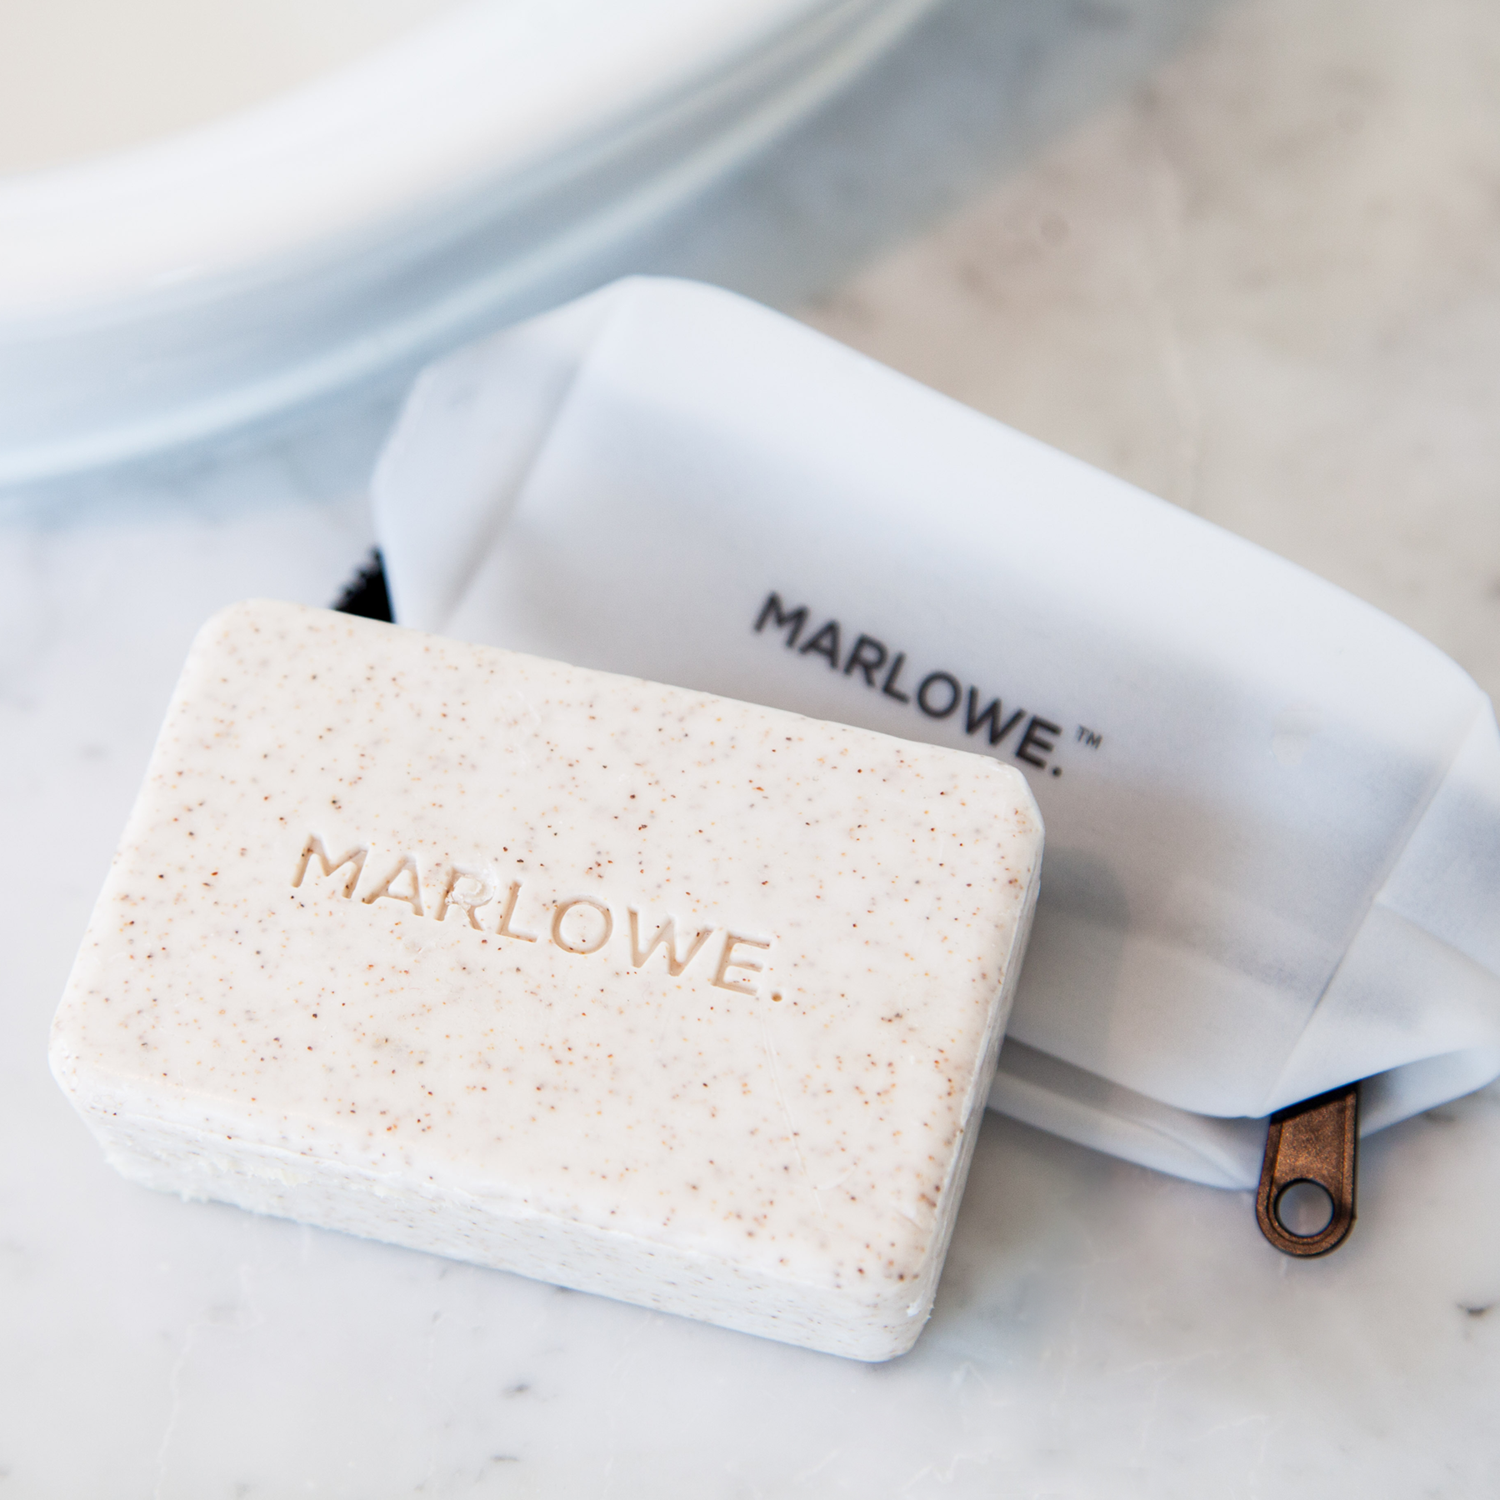 Marlowe No. 102 Body Scrub Bar Soap